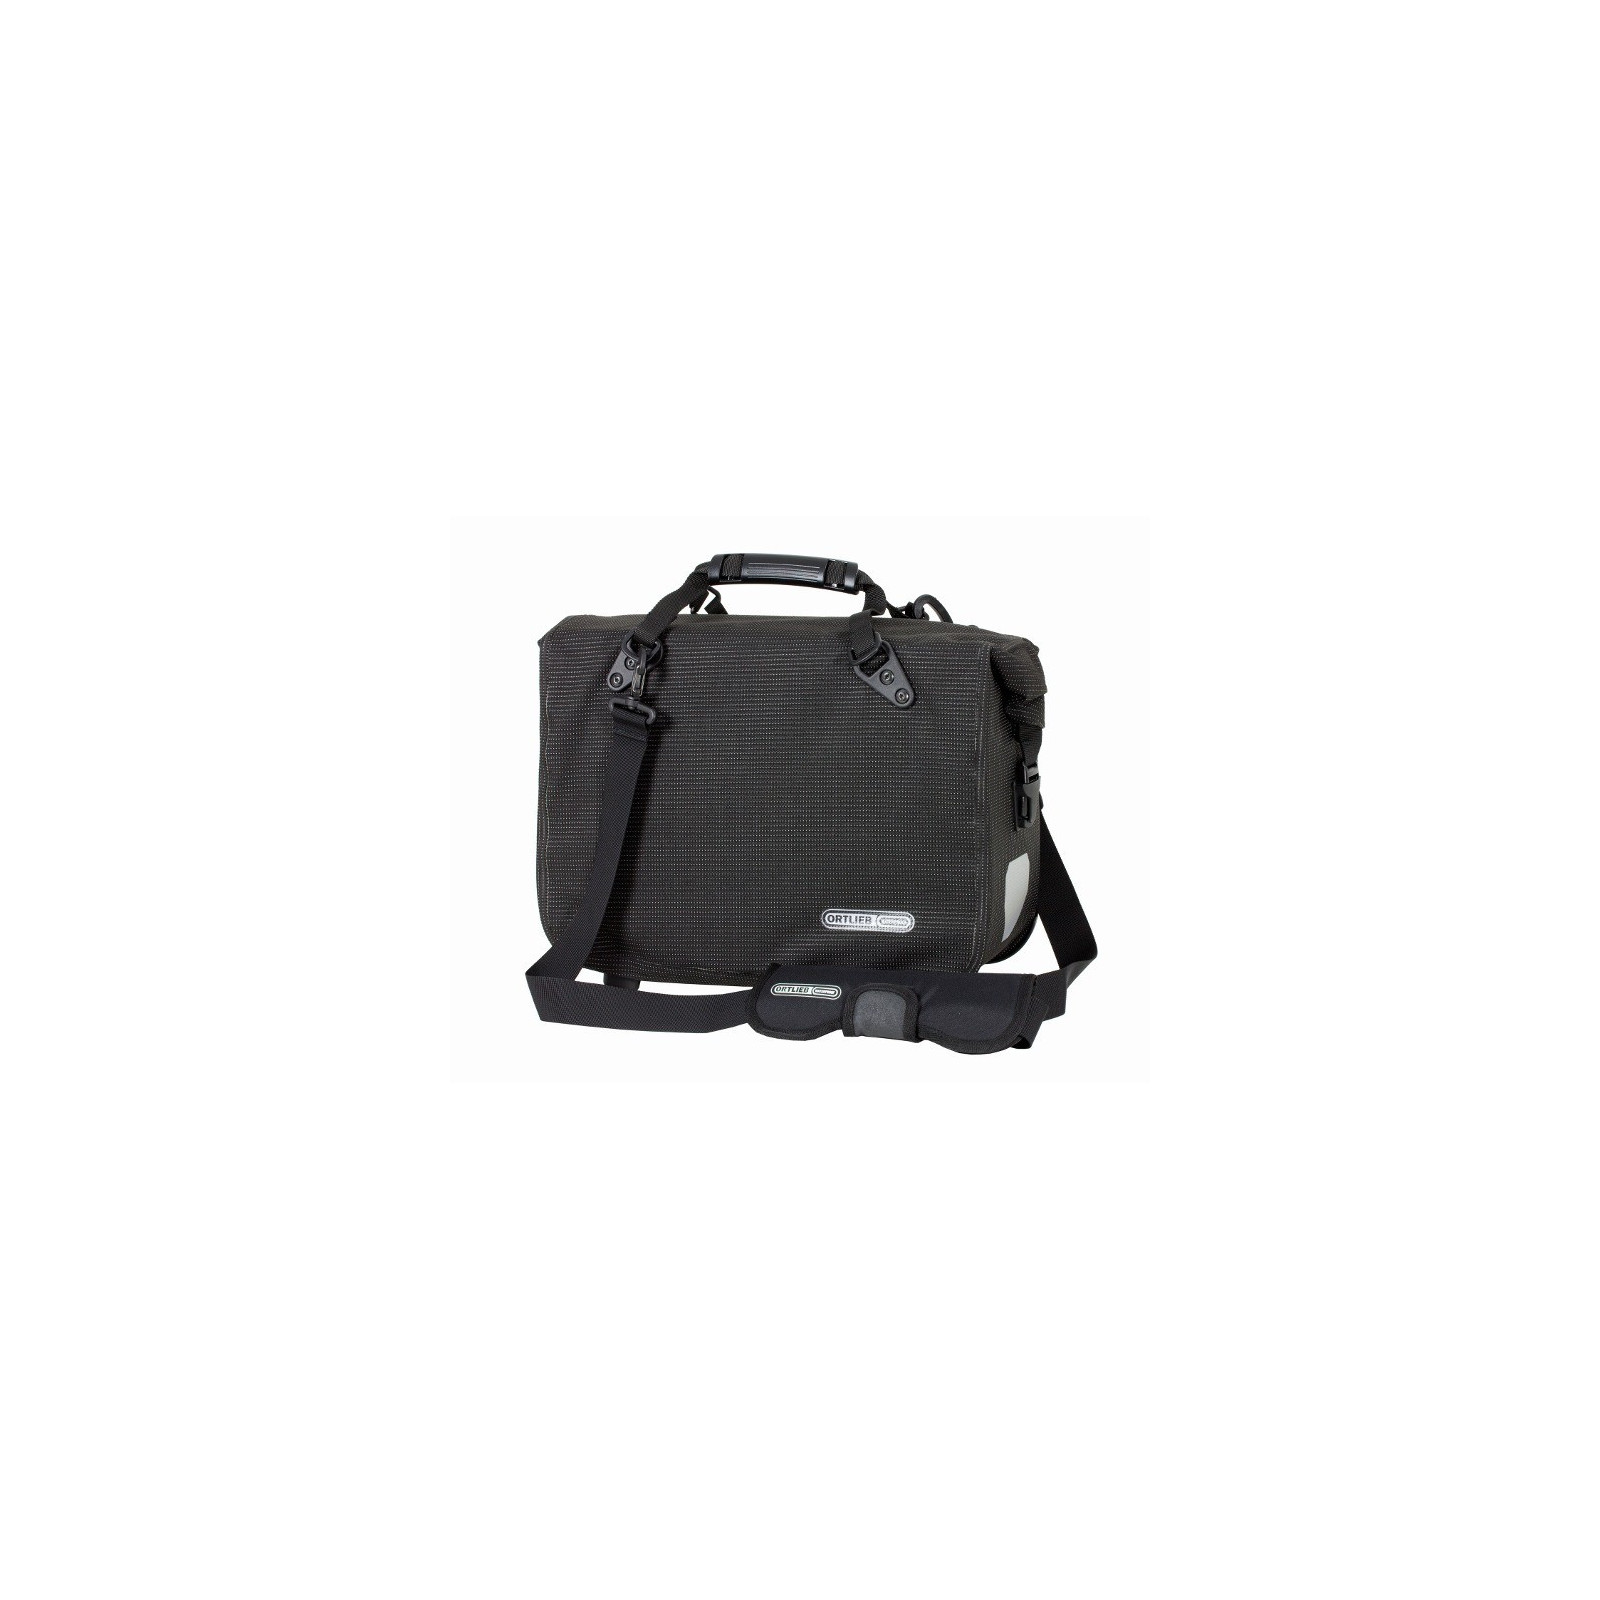 ORTLIEB Office-Bag QL3.1 High-Viz Waterproof Bike Briefcase now